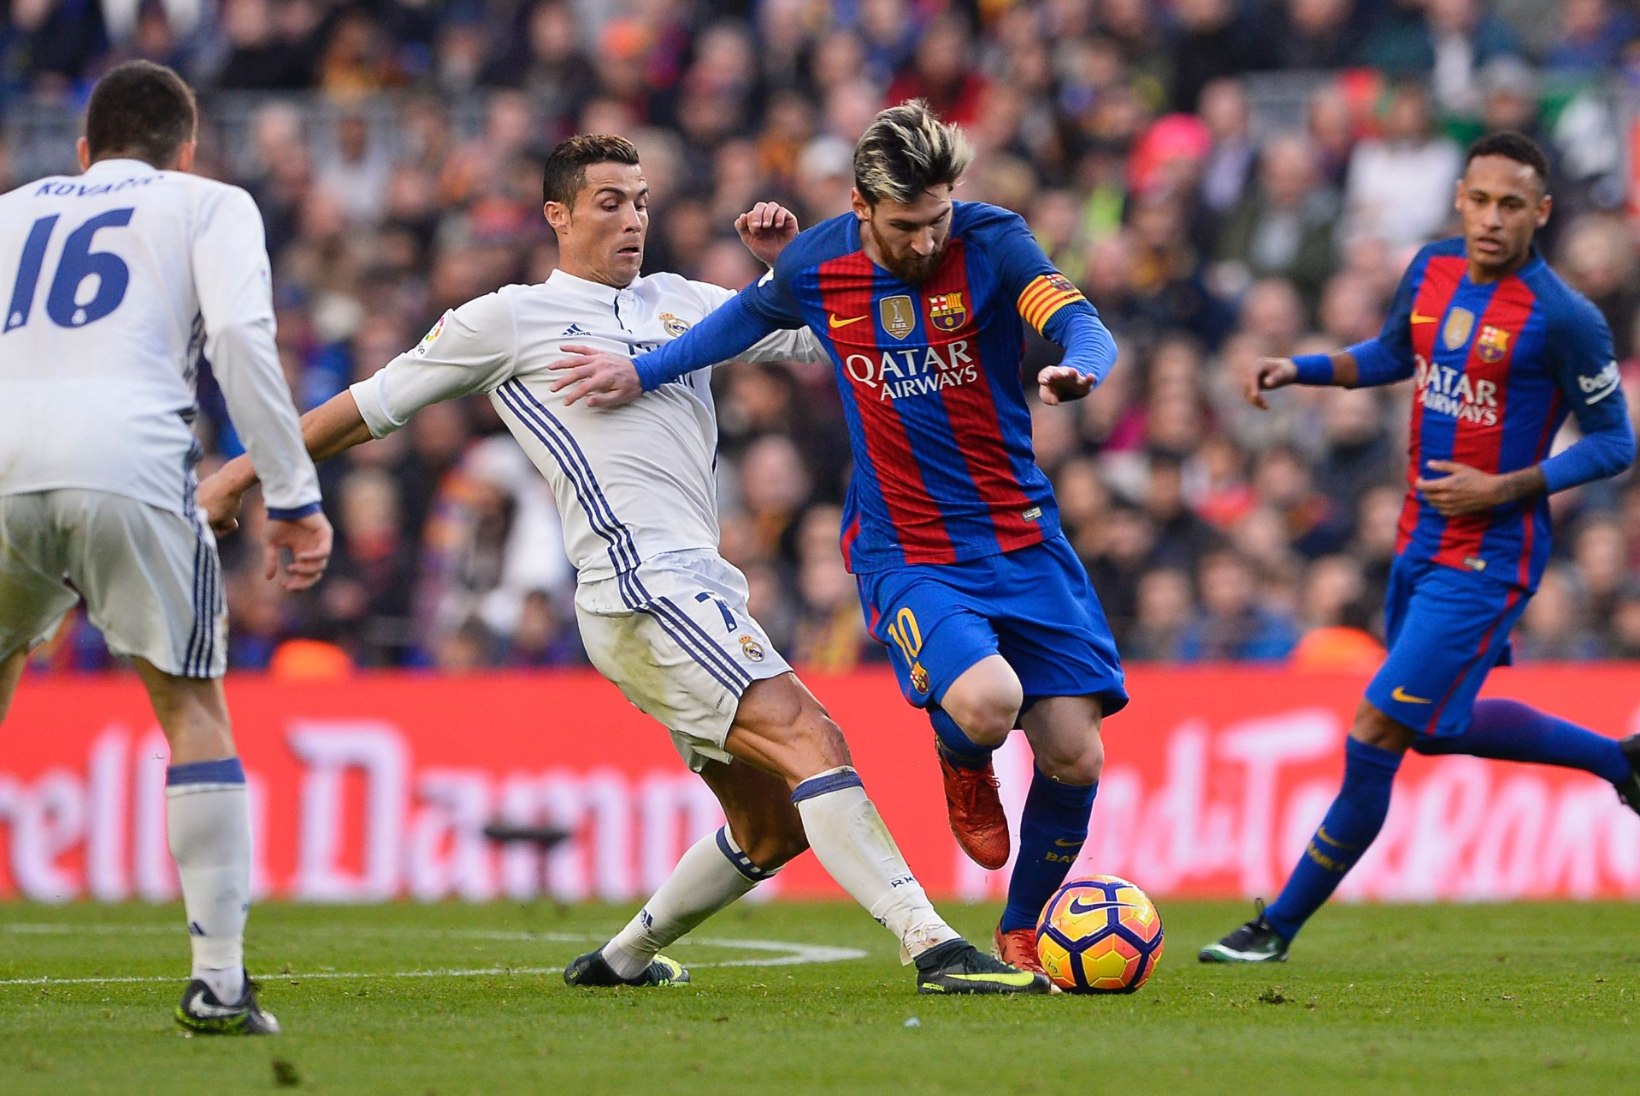 KOLMAS POOLAEG | FC Barcelona vs Madridi Real – vägeva duelli omapärad, tulipunktid ja hetkeseis